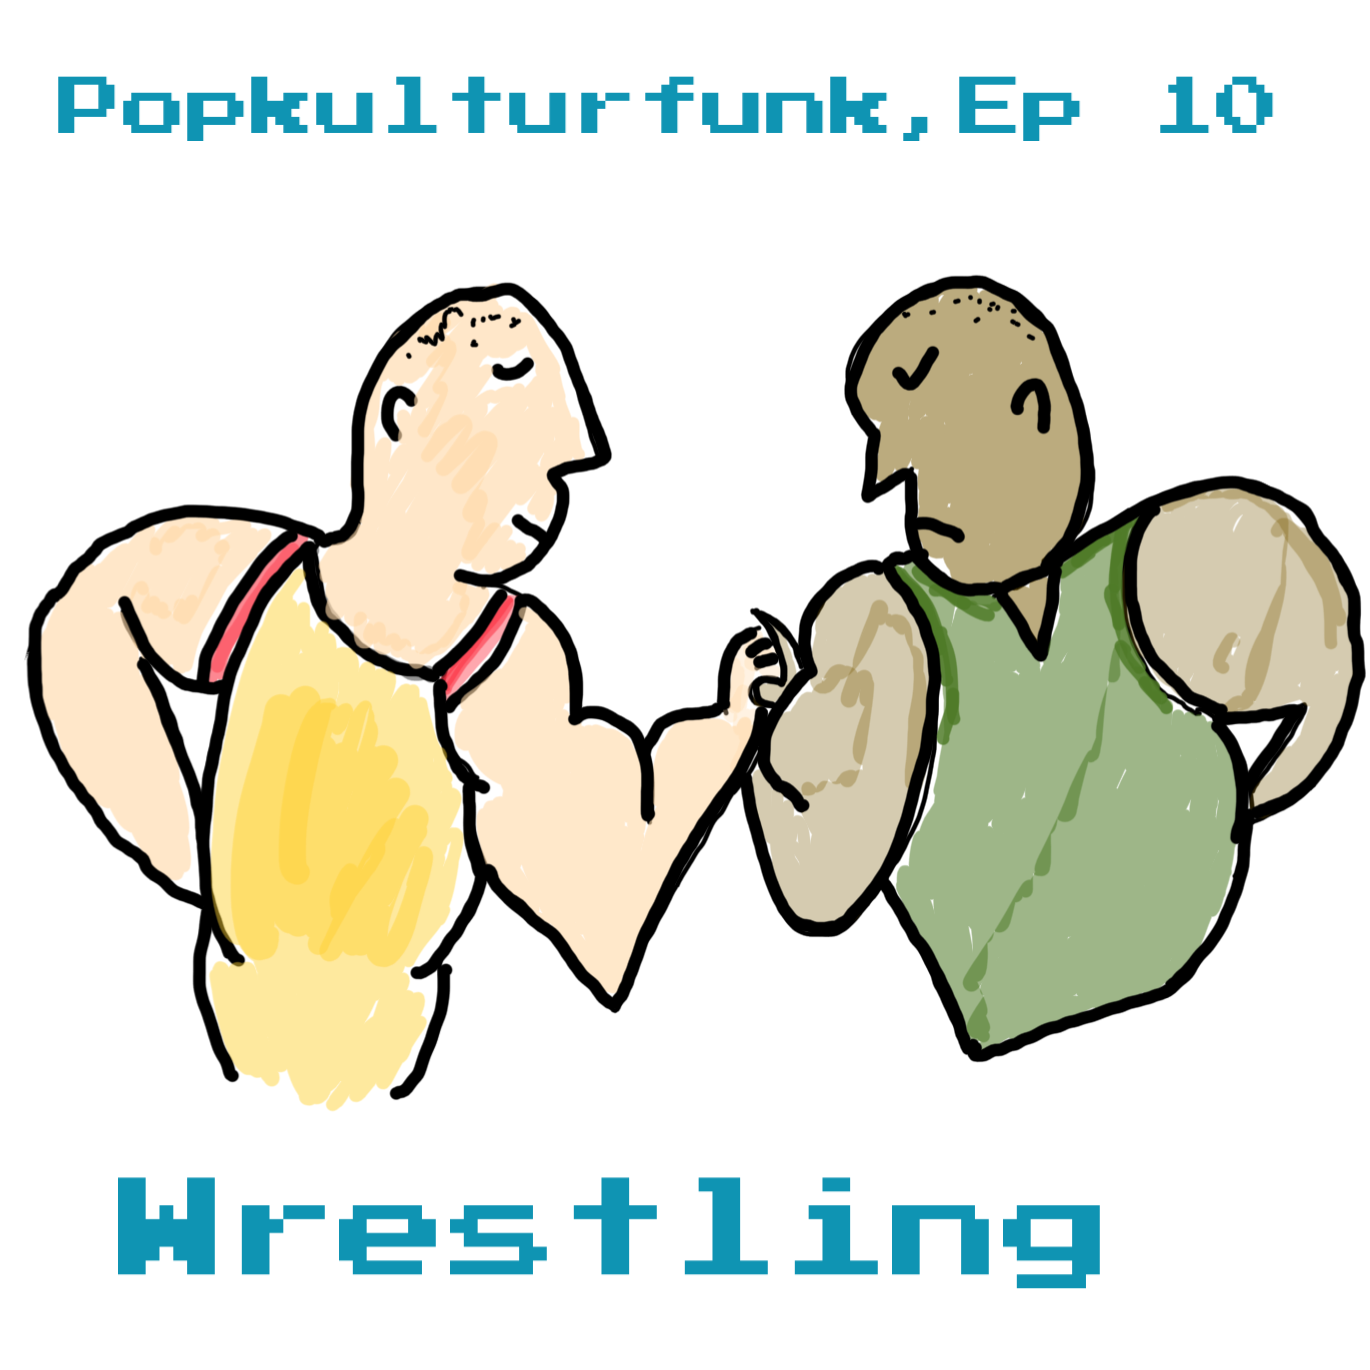 Episode 10: Wrestling